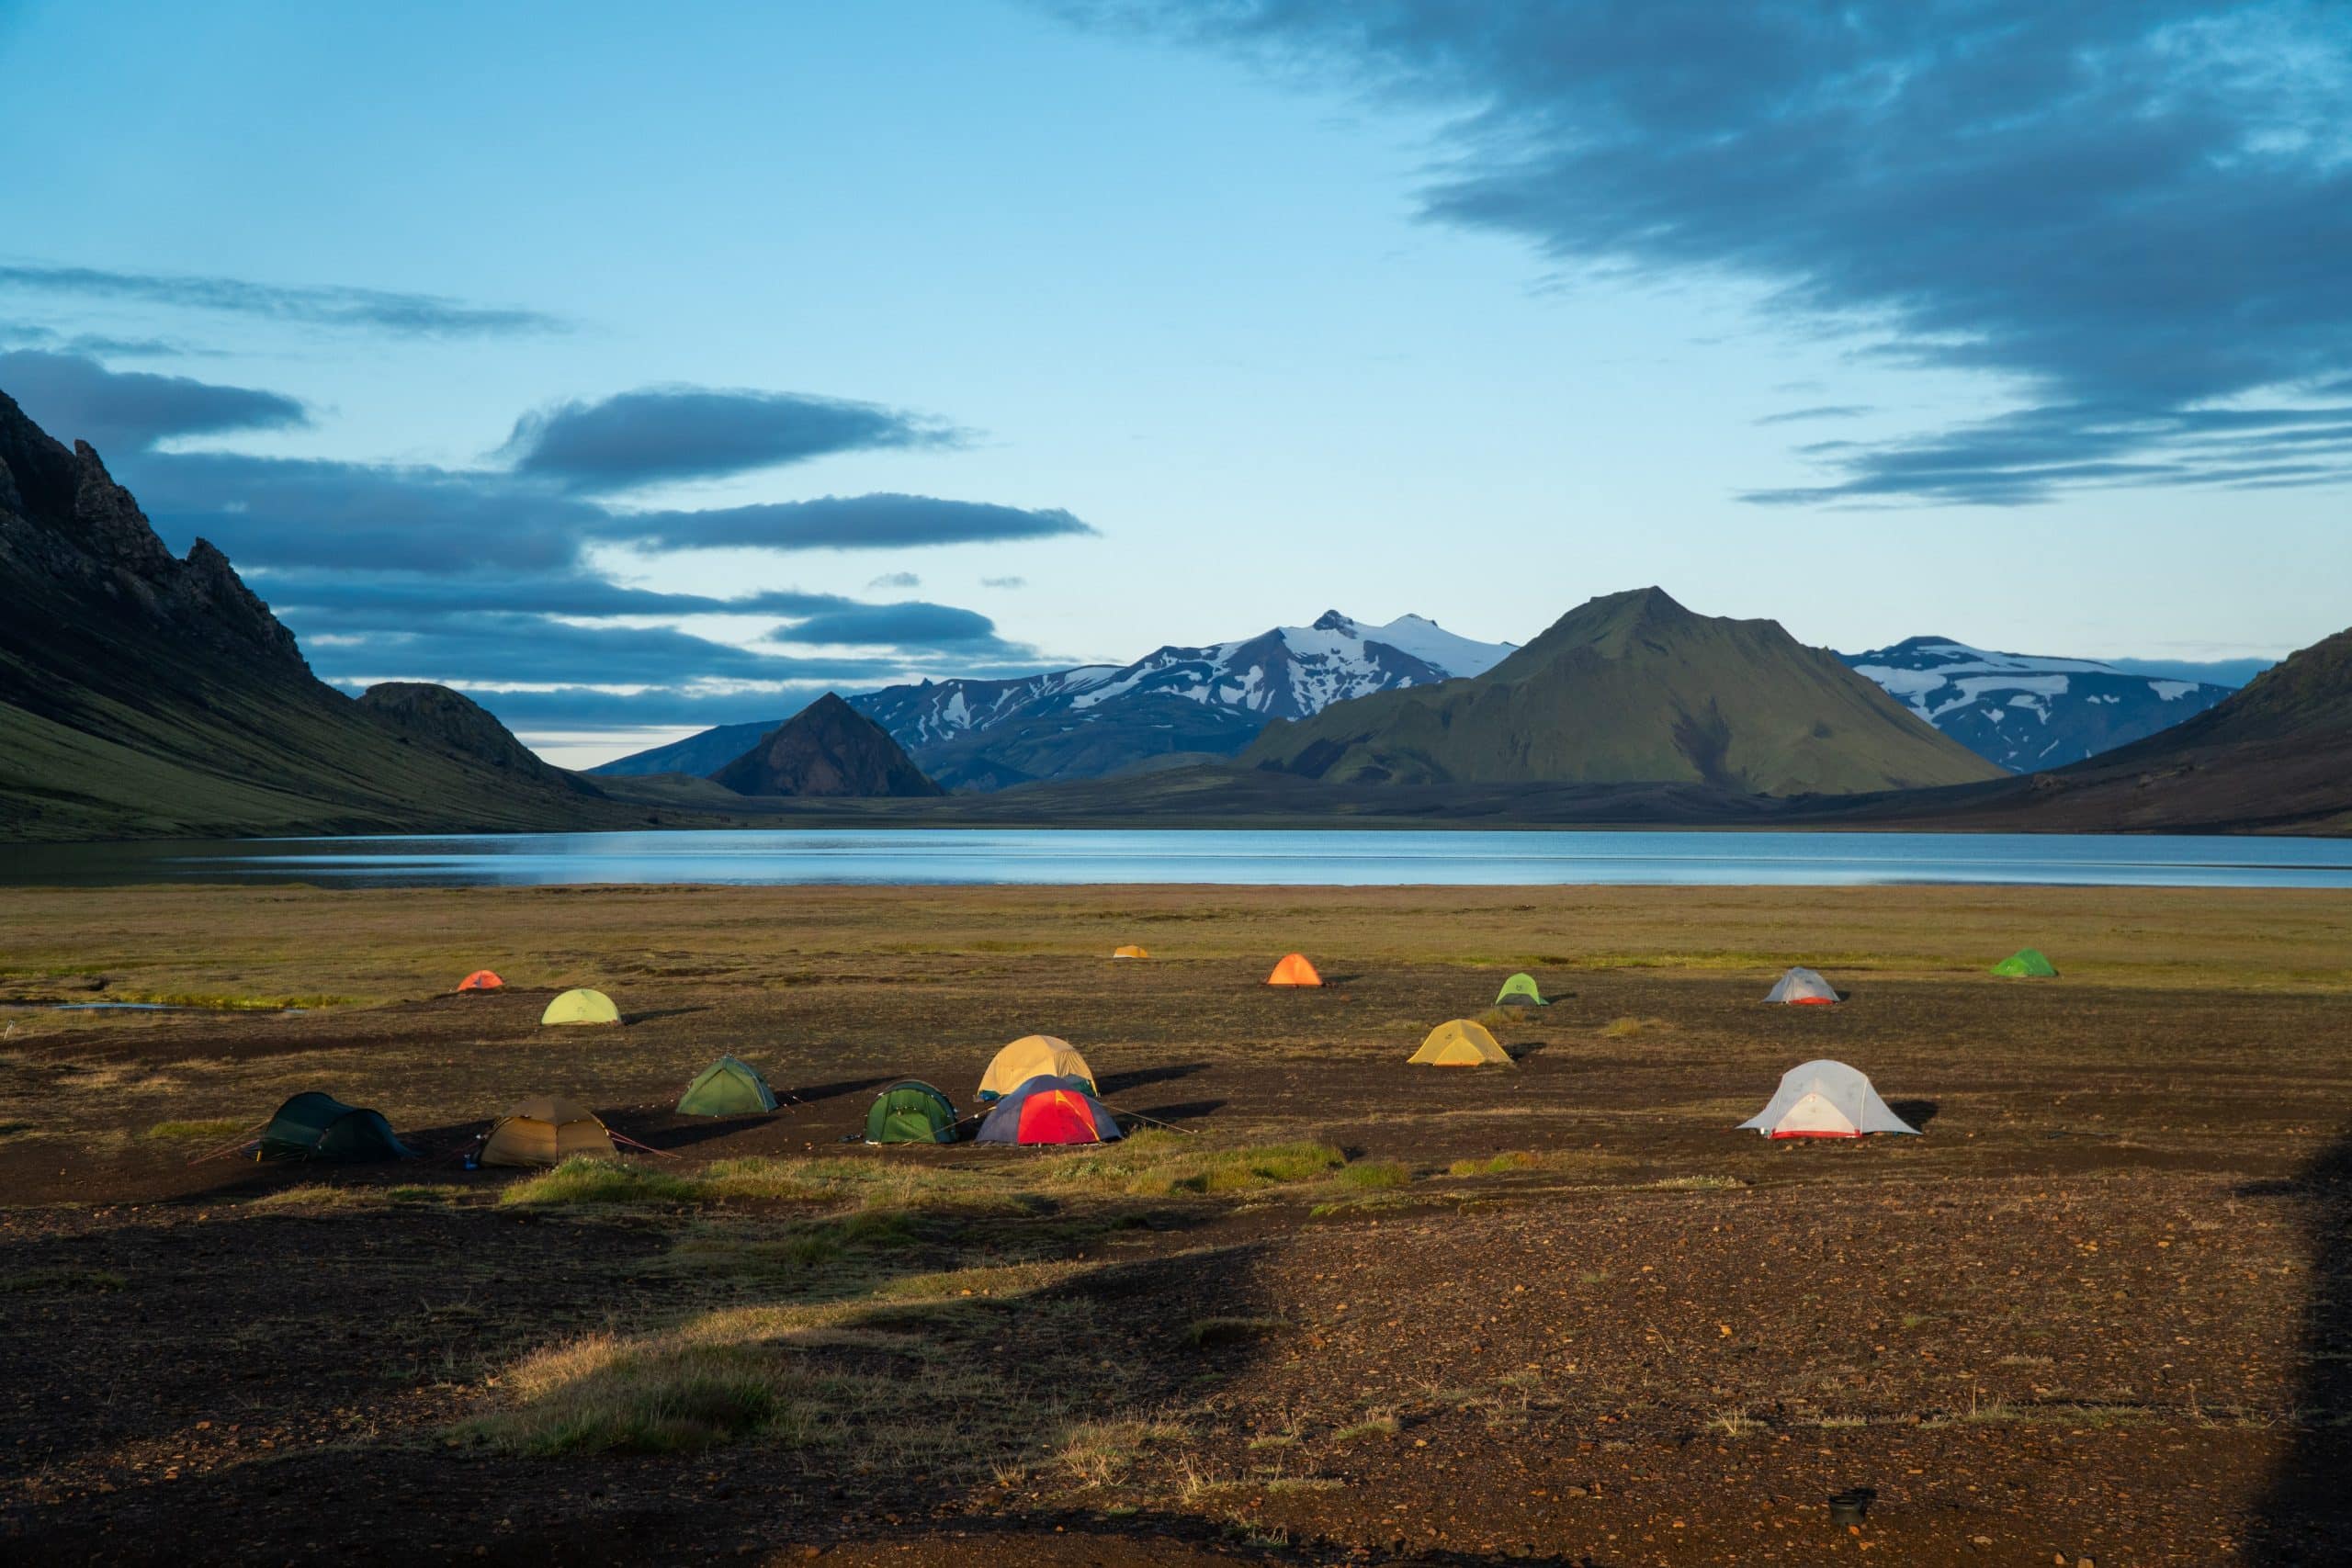 Tiendas de campaña en un camping en las Tierras Altas de Islandia, con vistas a un lago.